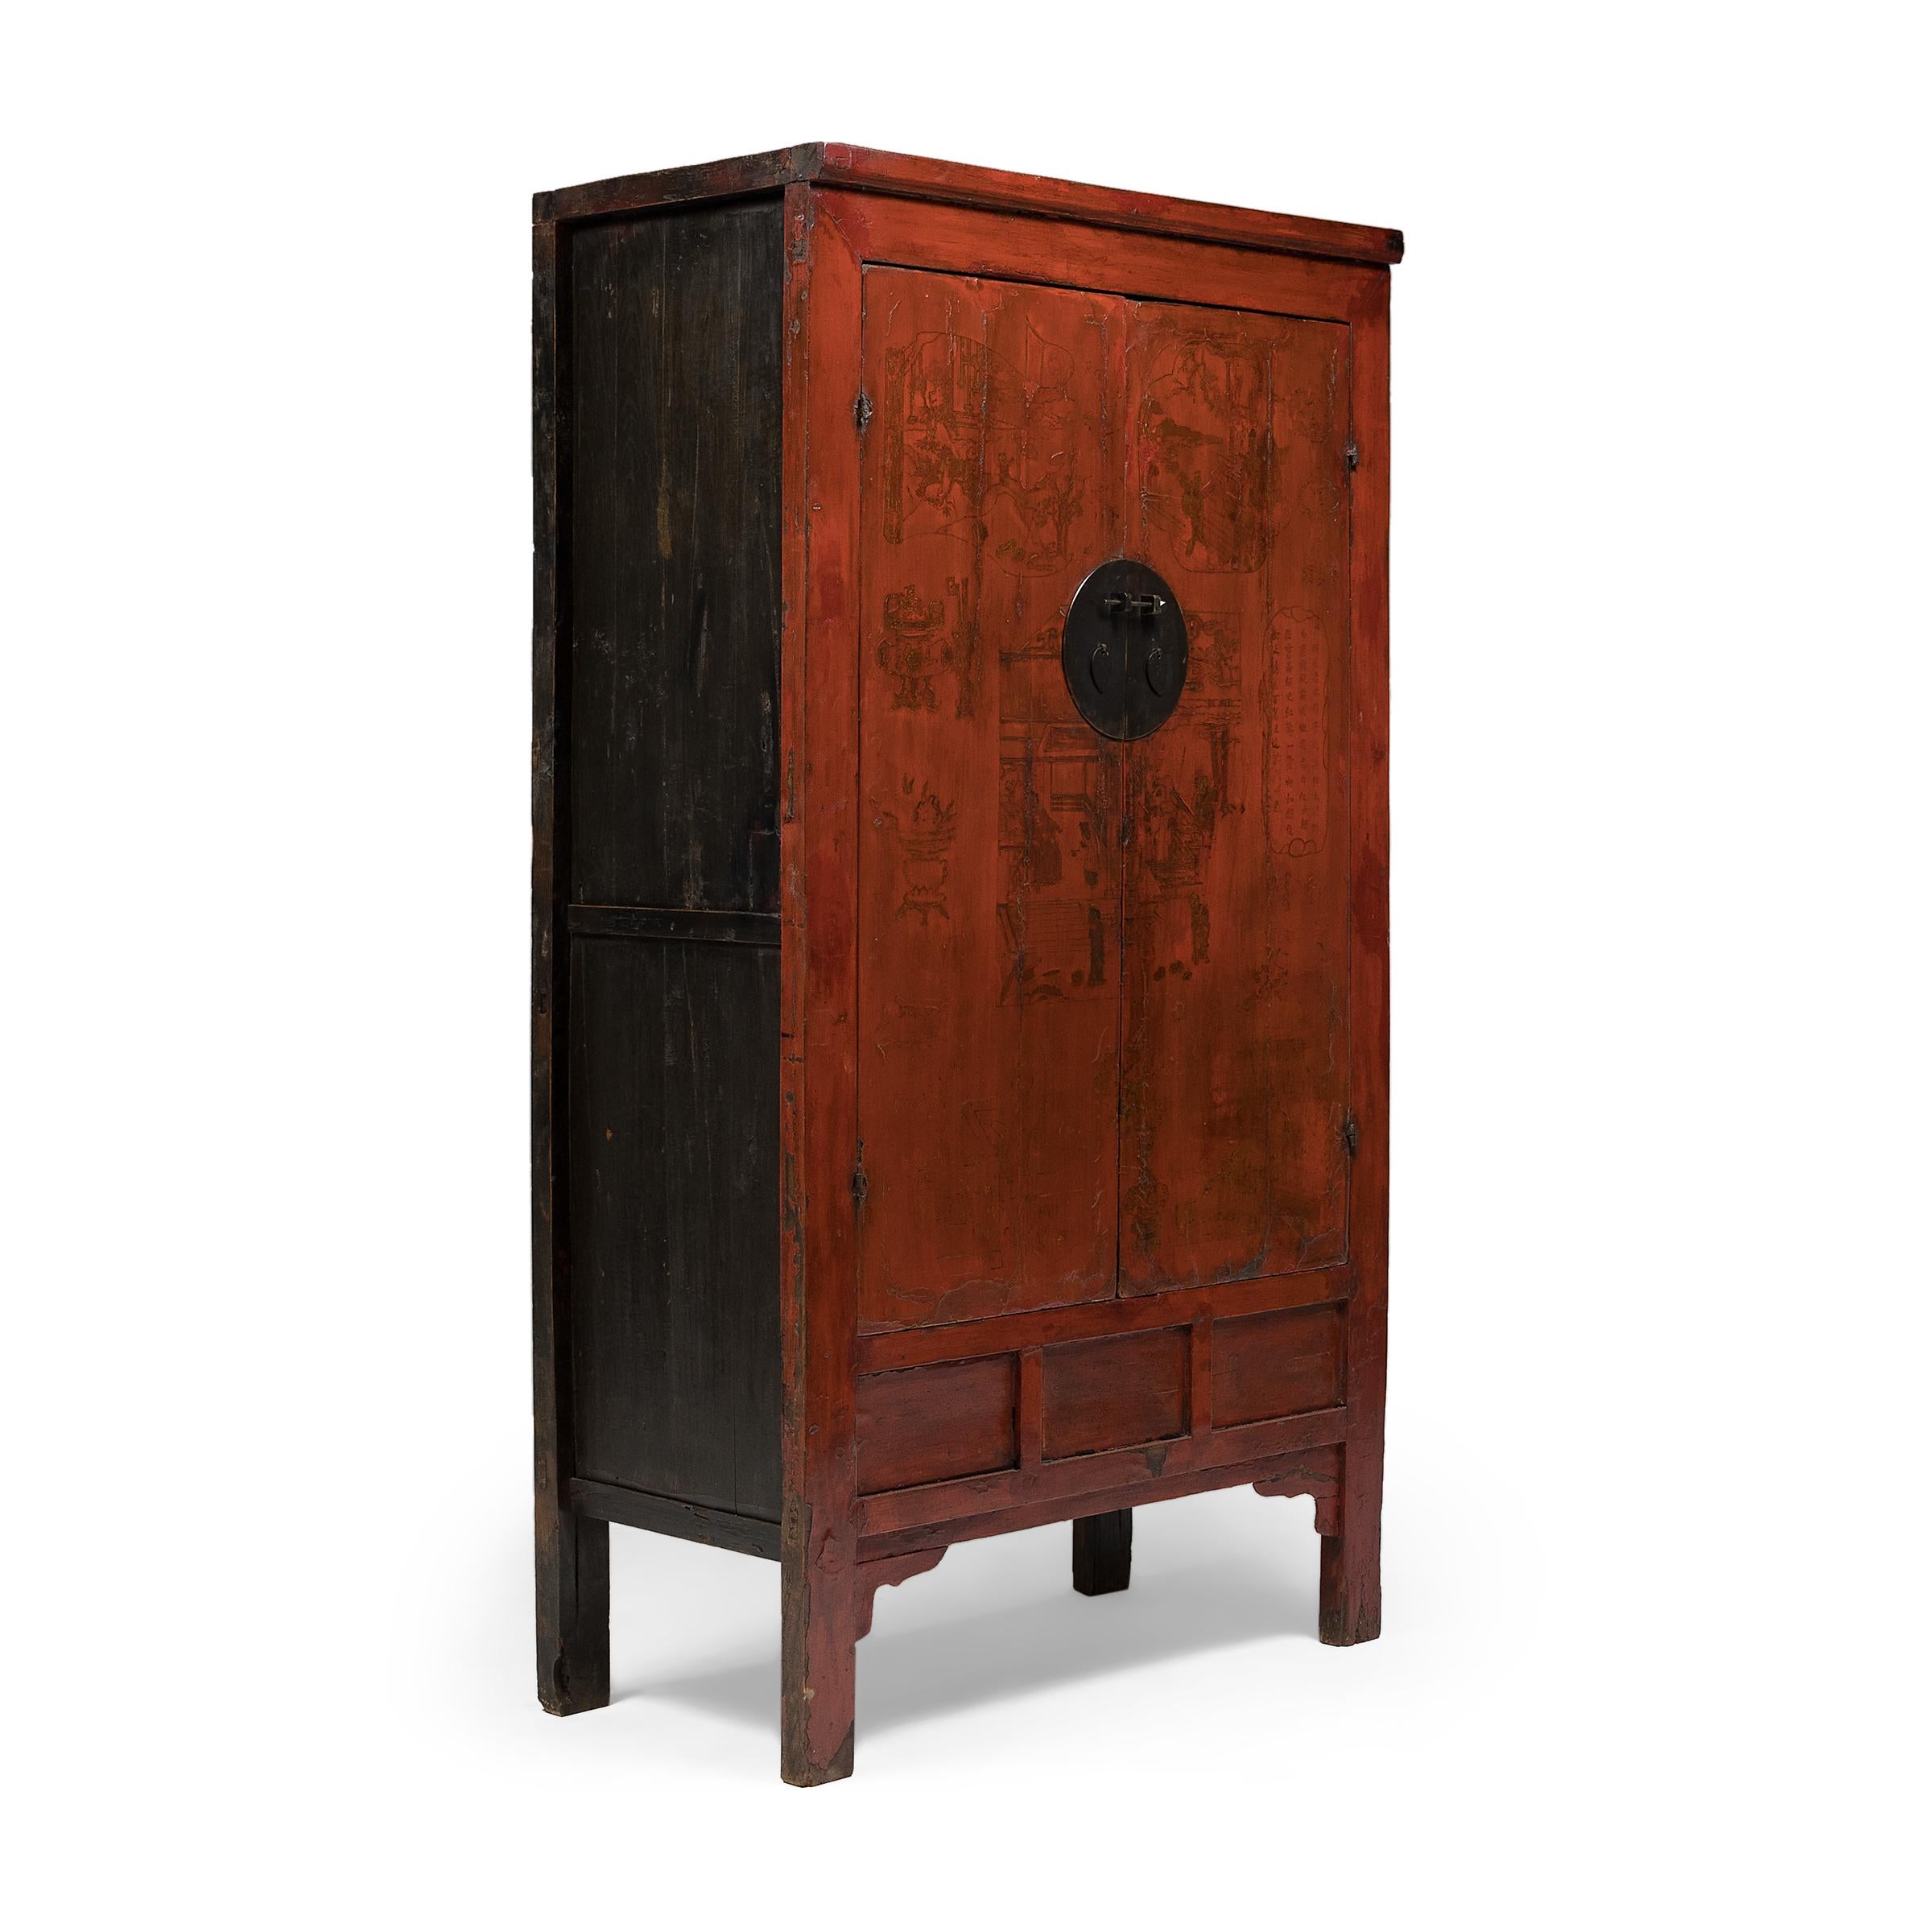 Avec sa taille imposante et sa silhouette simple, ce grand meuble de la dynastie Qing offrait une toile parfaite pour une décoration élaborée. Fabriquée au milieu du XIXe siècle, cette armoire présente une forme épurée, avec des côtés droits, des